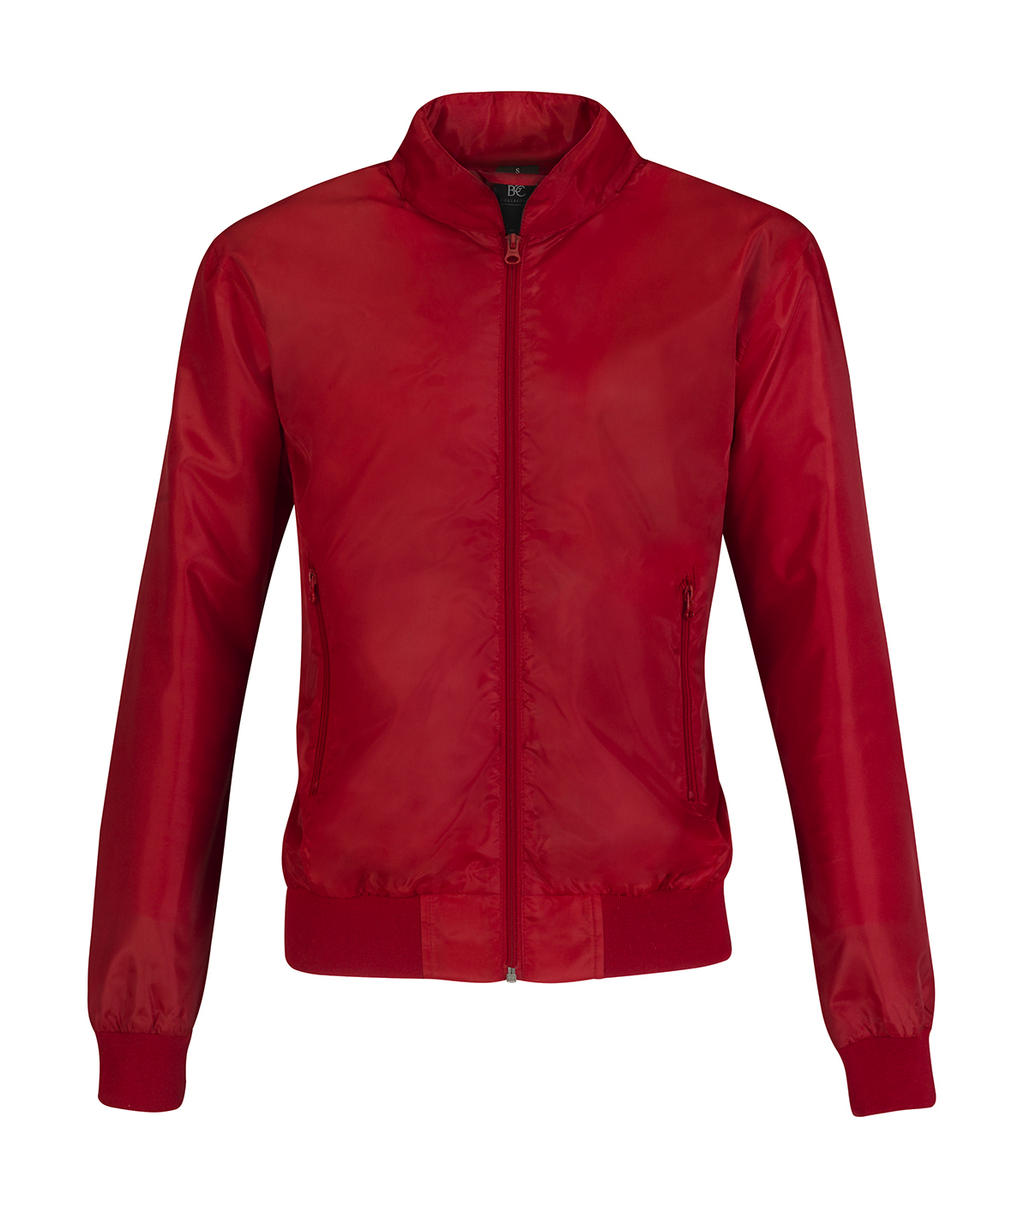  Trooper/women Jacket in Farbe Red/Warm Grey